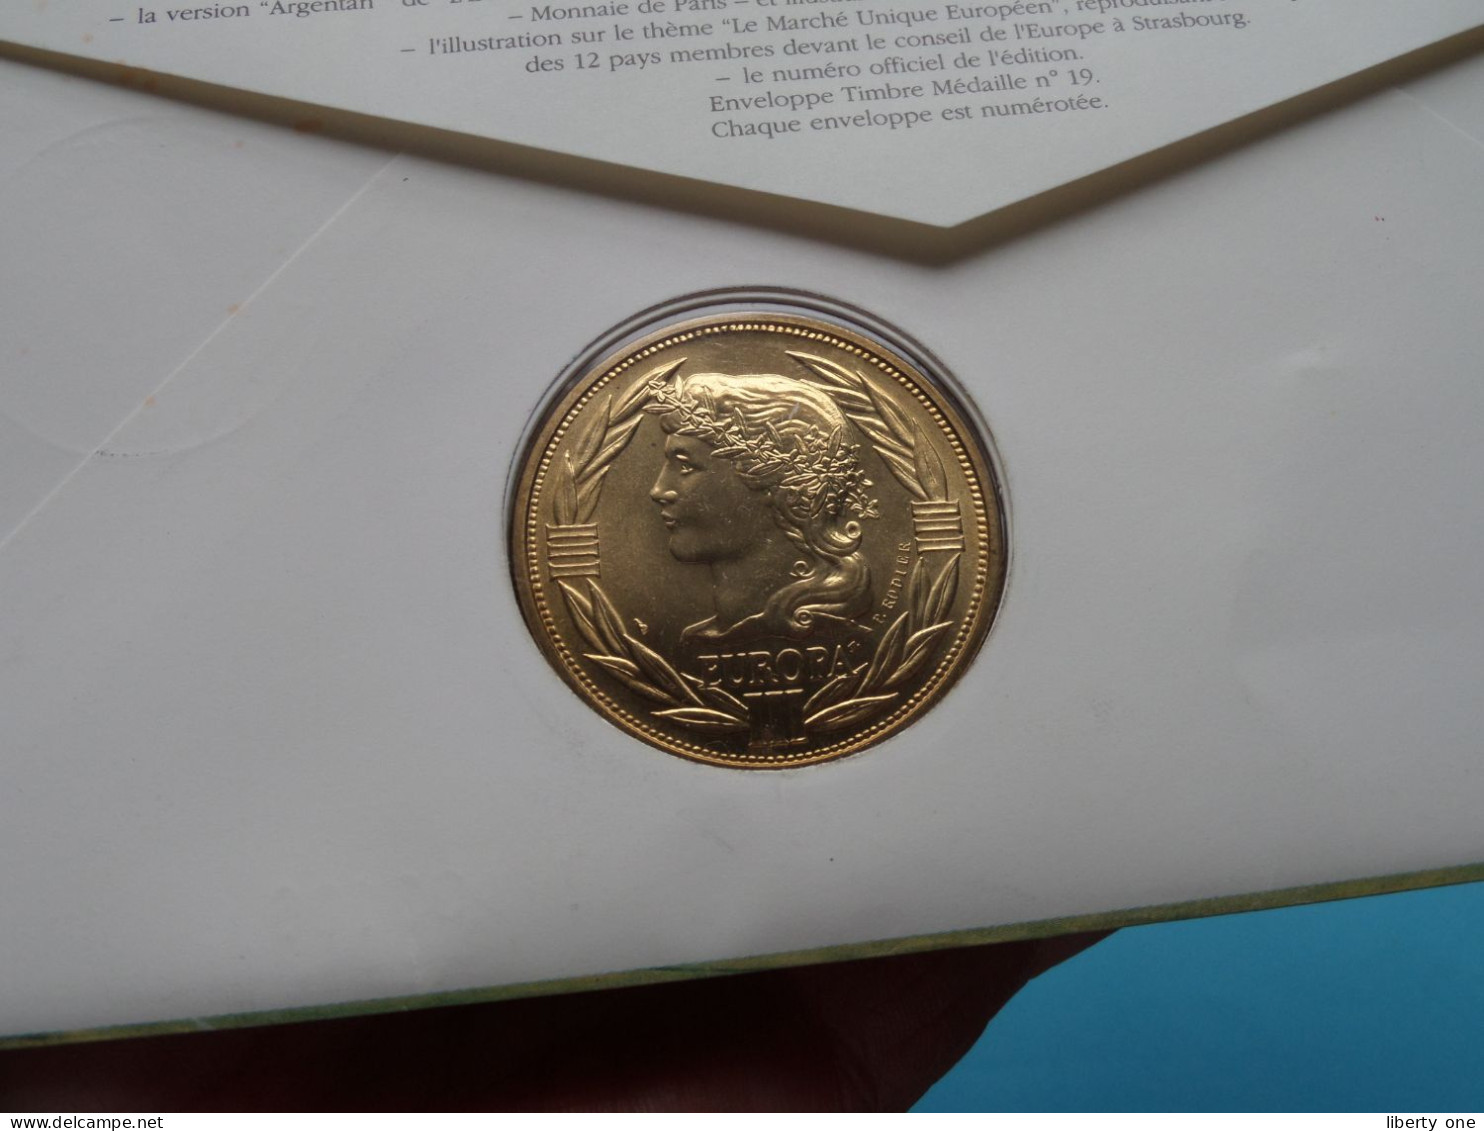 EUROPA Le Marché Unique Européen ( Voir Scans ) Enveloppe Numismatique Monnaie De Paris N° 03166 > 1992 > Numislettre ! - Souvenir-Medaille (elongated Coins)